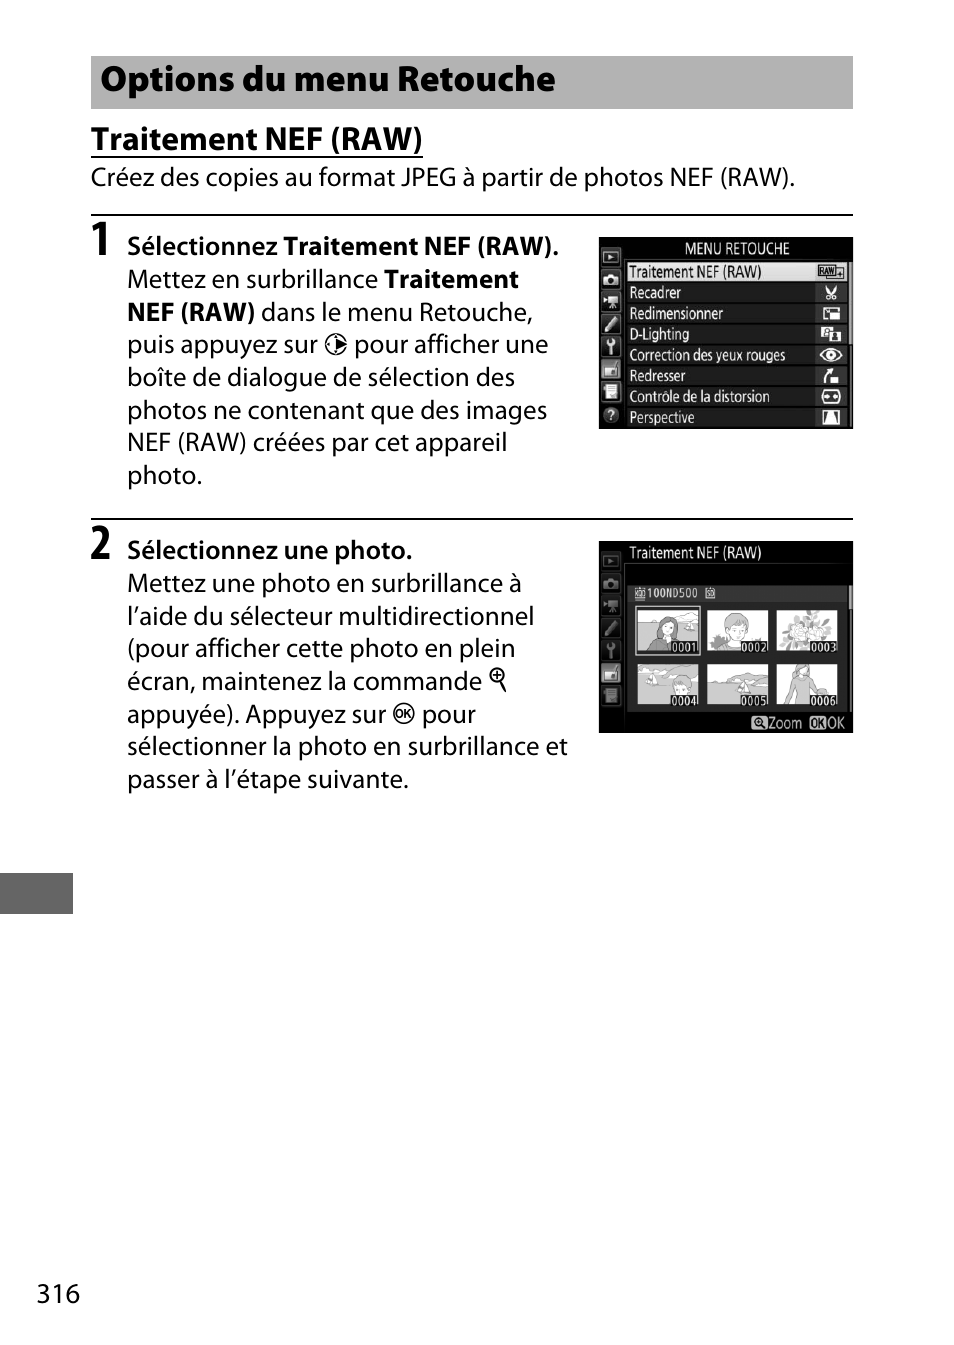 Options du menu retouche, Traitement nef (raw) | Nikon D500 Manuel d'utilisation | Page 342 / 432